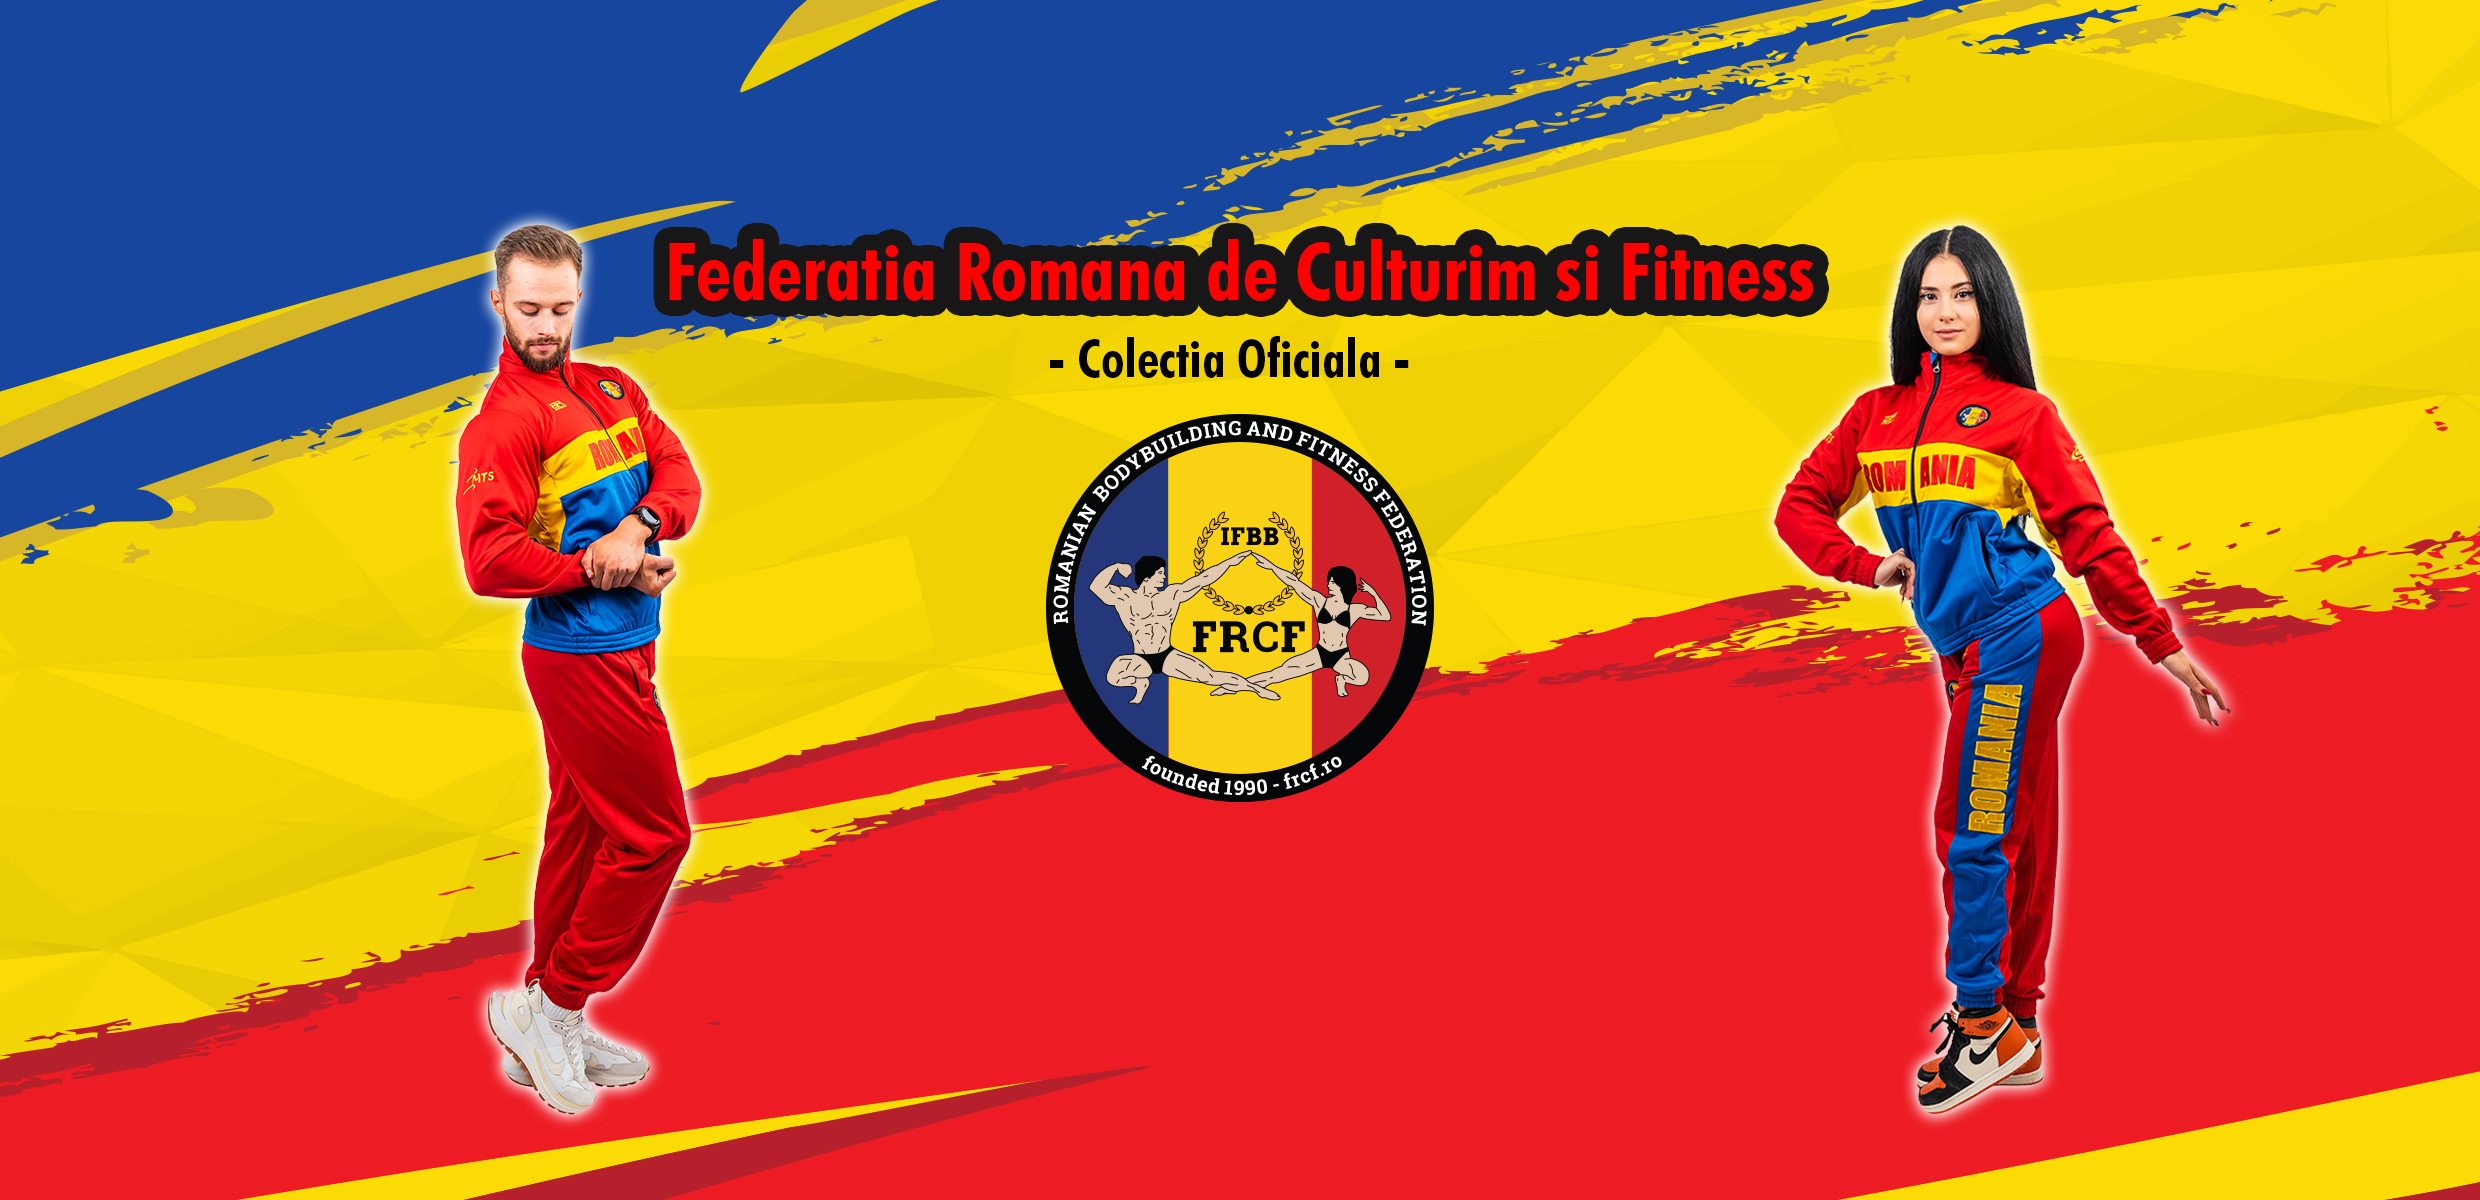 Federatia Romana de Culturism si Fitness